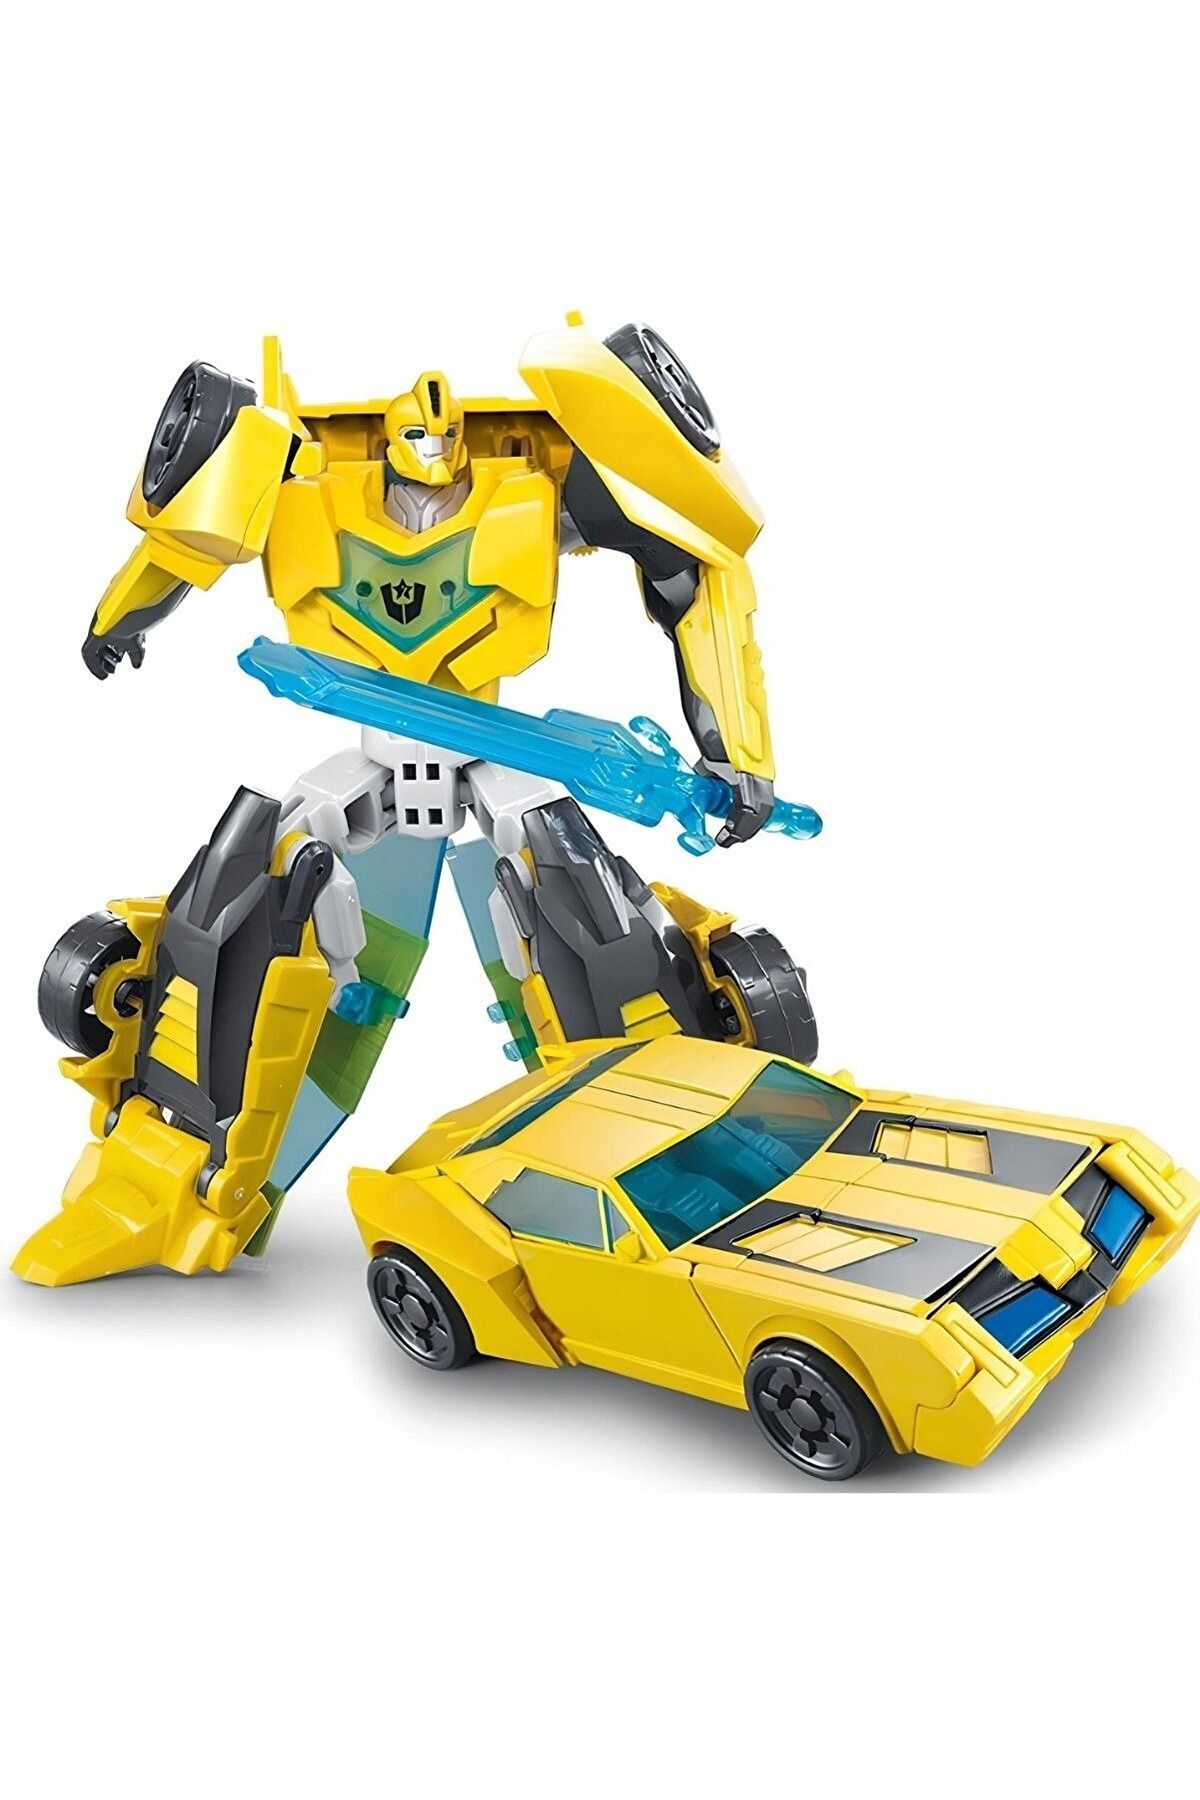 OYUNCAK STORE Transformers Bumblebee Oyuncak Dönüşebilen Savaşçı Robot Oyuncak Metal Gövde